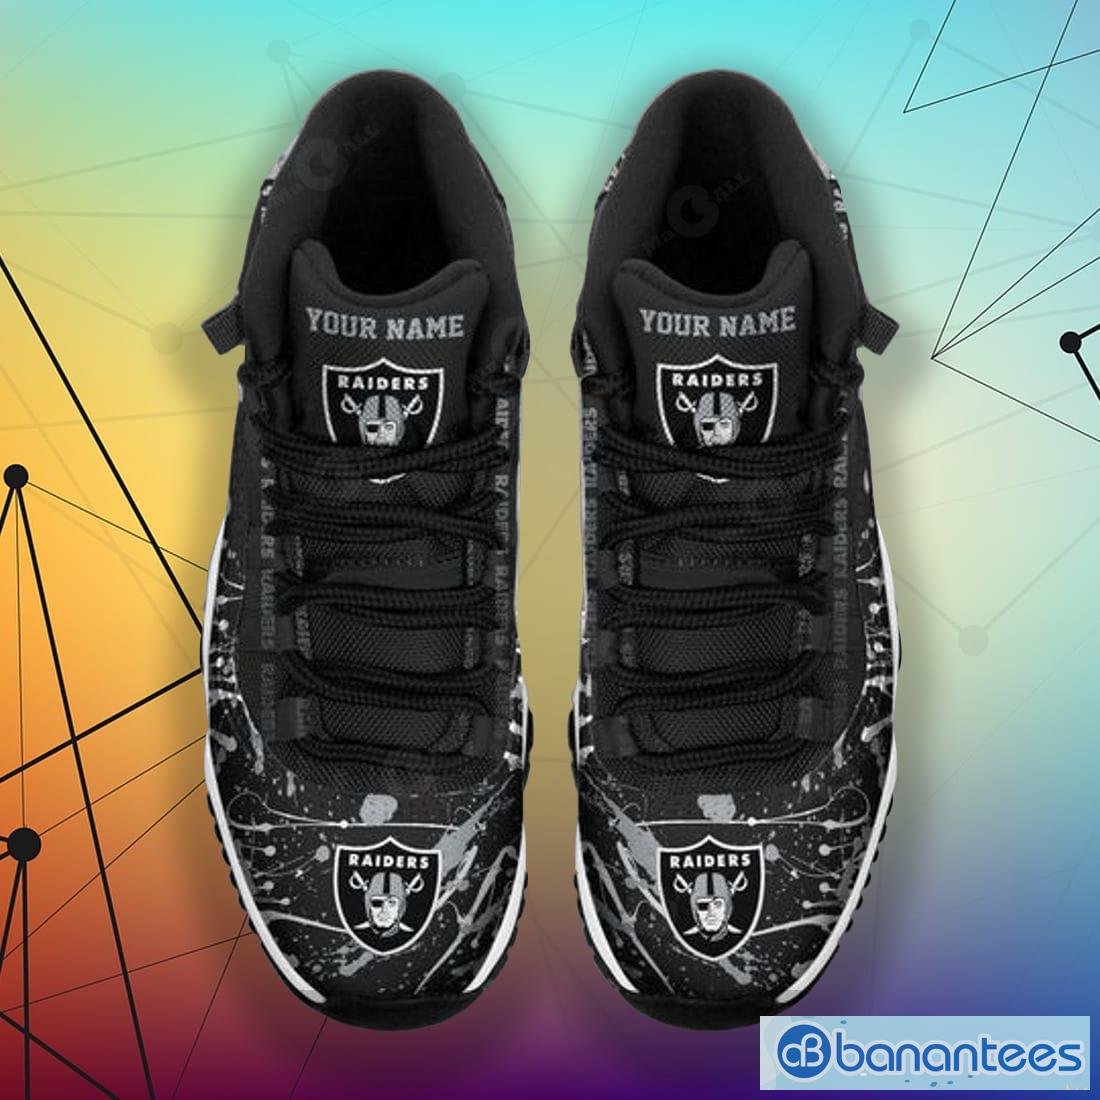 Las Vegas Raiders NFL Air Jordan 11 Sneakers Shoes Gift For Fans - Banantees